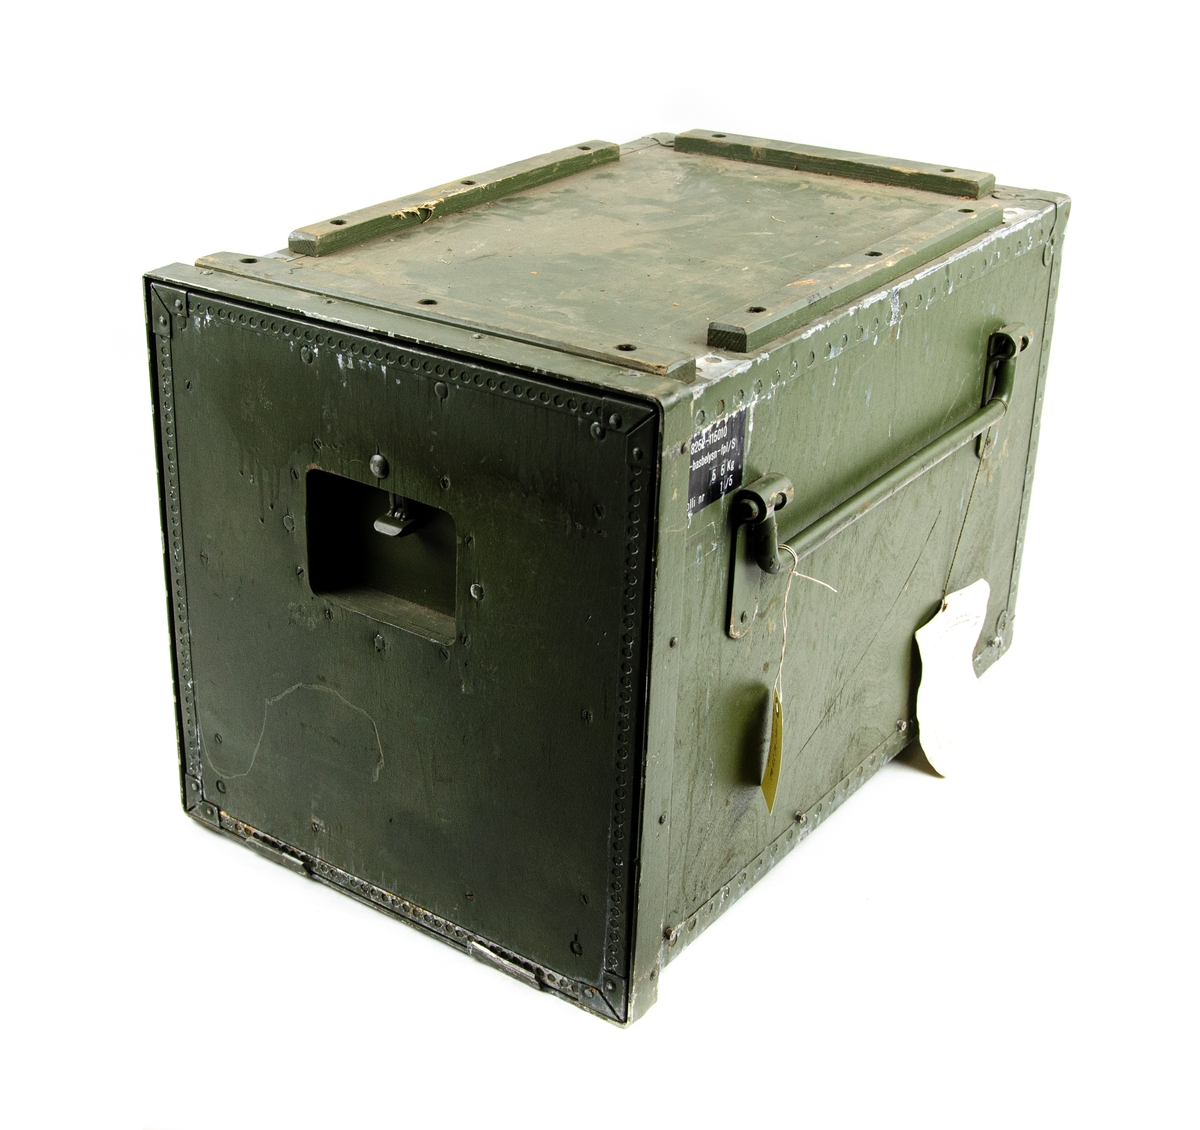 Elmotor SACHS-Stamo med generator EISMANN för flygfältsbelysning. Förvaras i förvaringslåda med kablage och verktygsväska. Två stycken enheter.